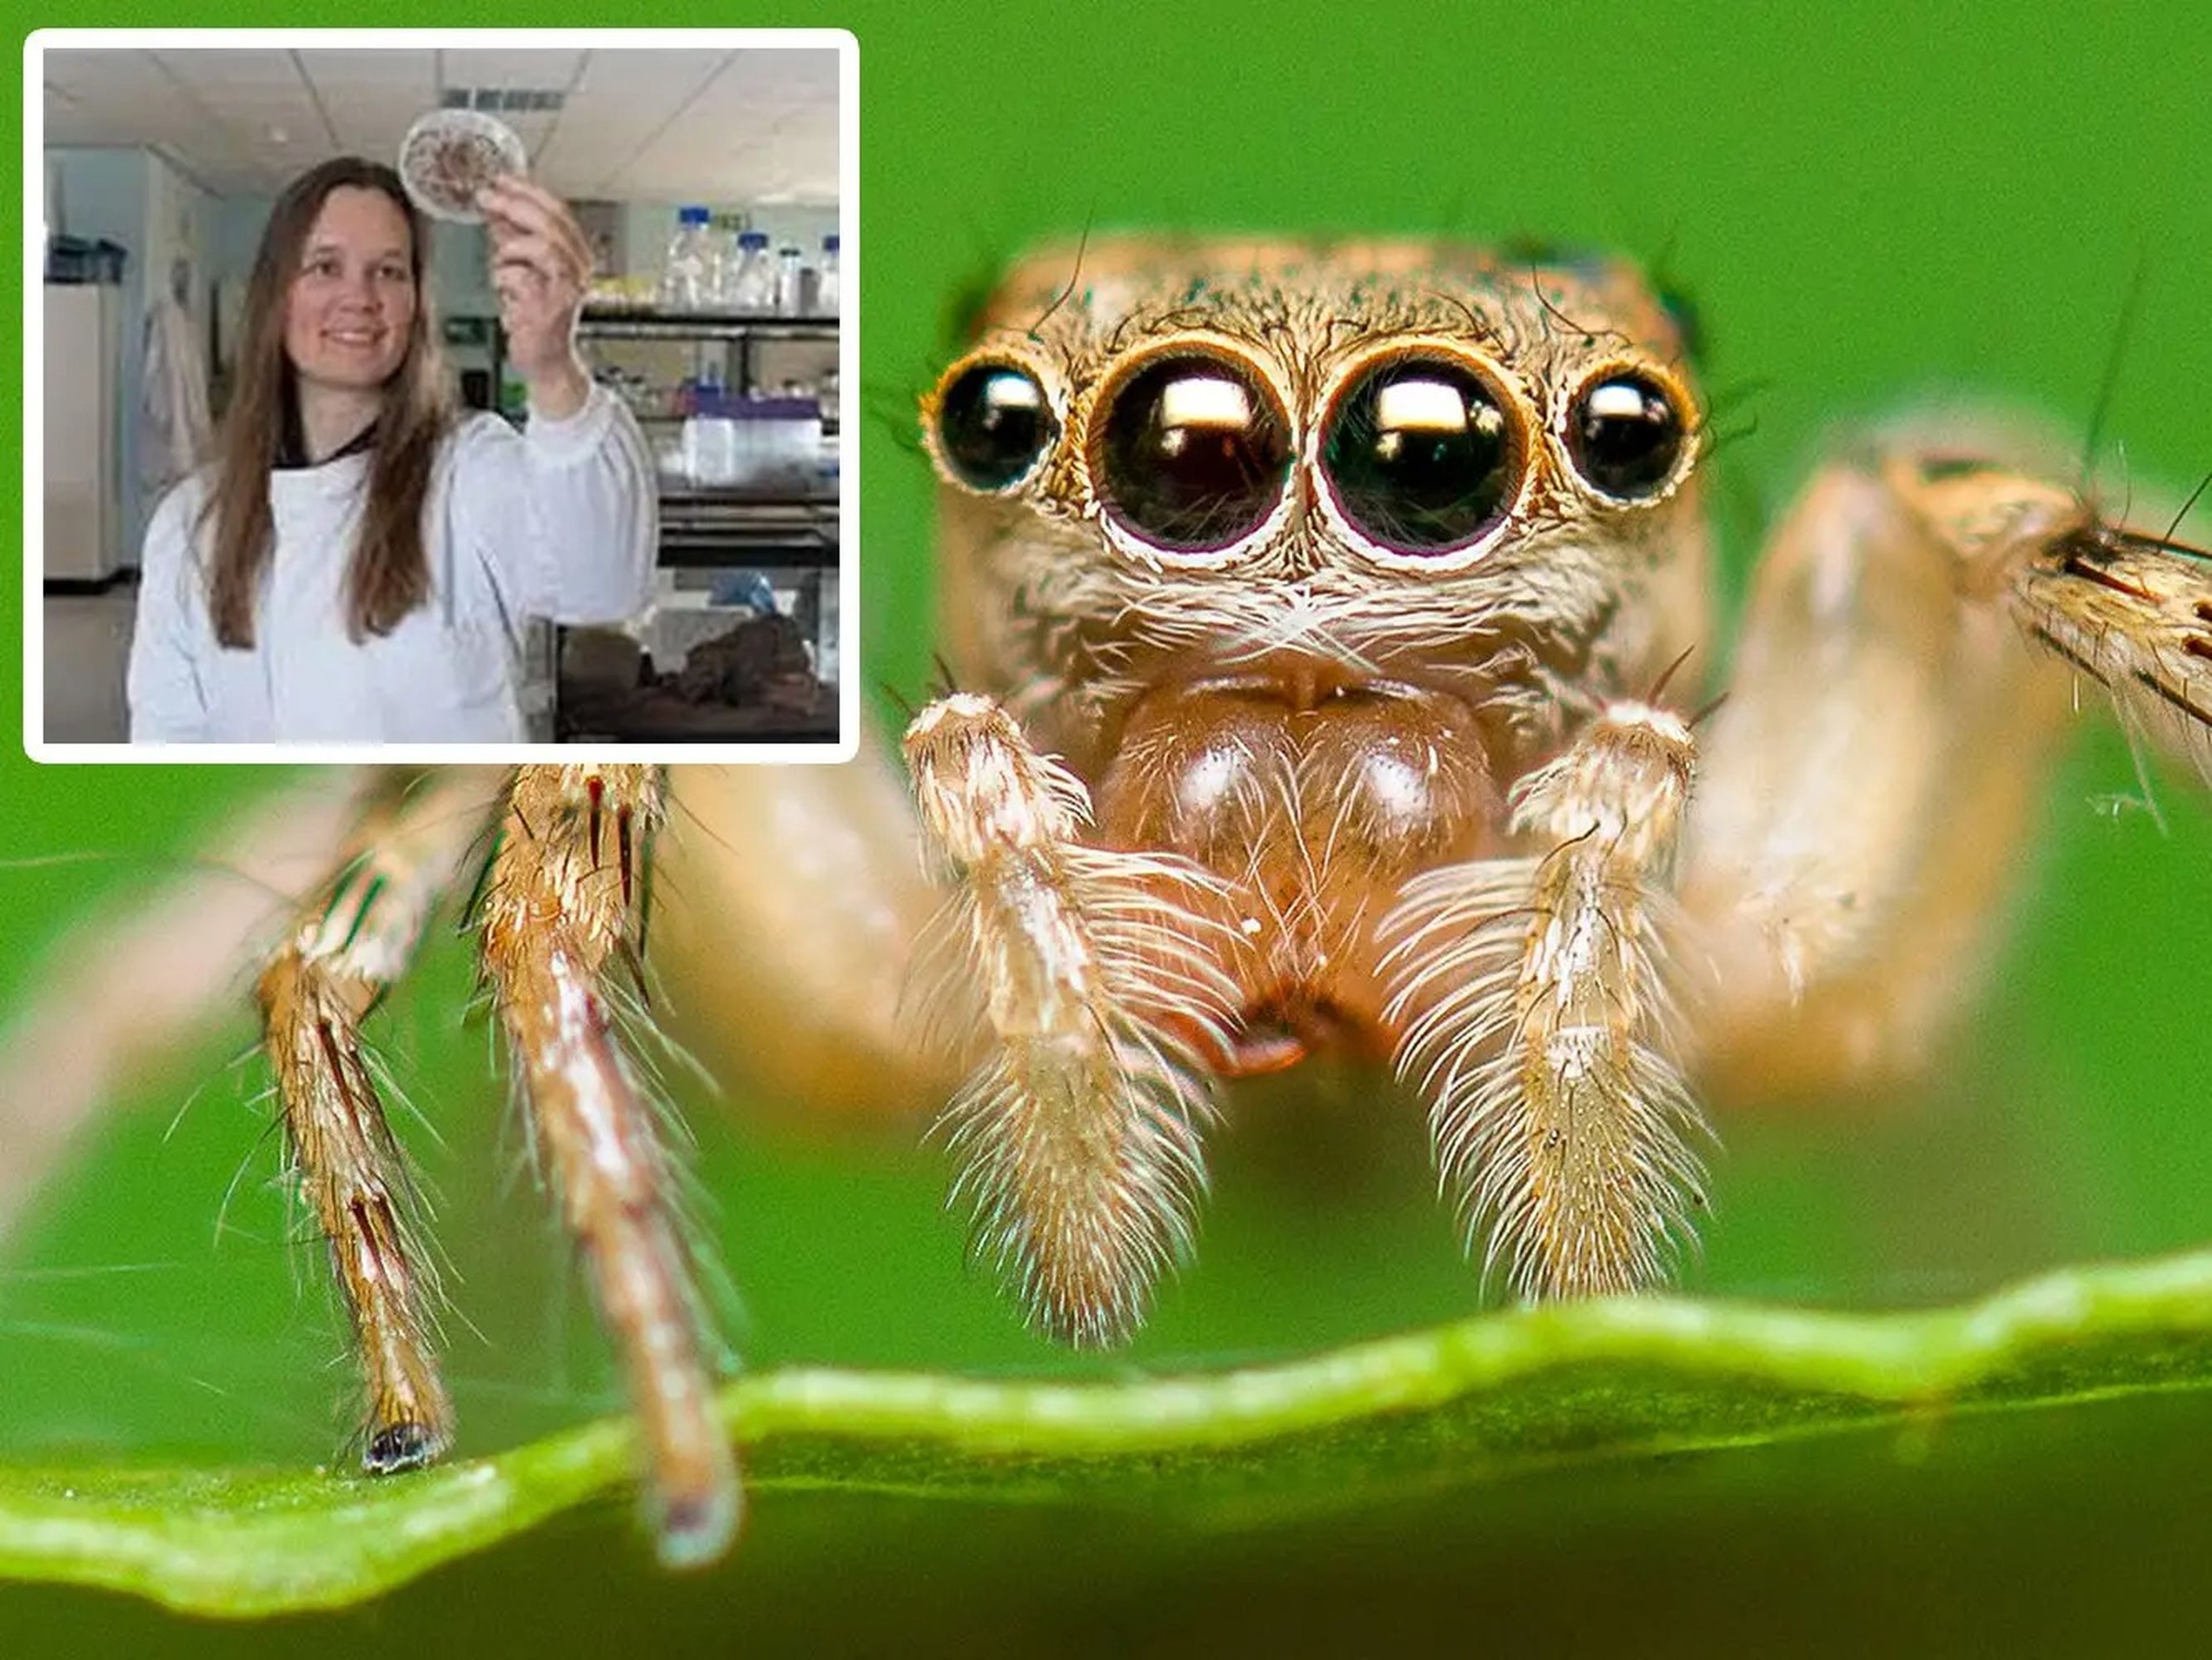 La bióloga Sara Goodacre estudia la seda de araña para su uso en medicina e ingeniería. La araña que aparece aquí es una Salticus scenicus, que no está relacionada con la investigación de Goodacre.